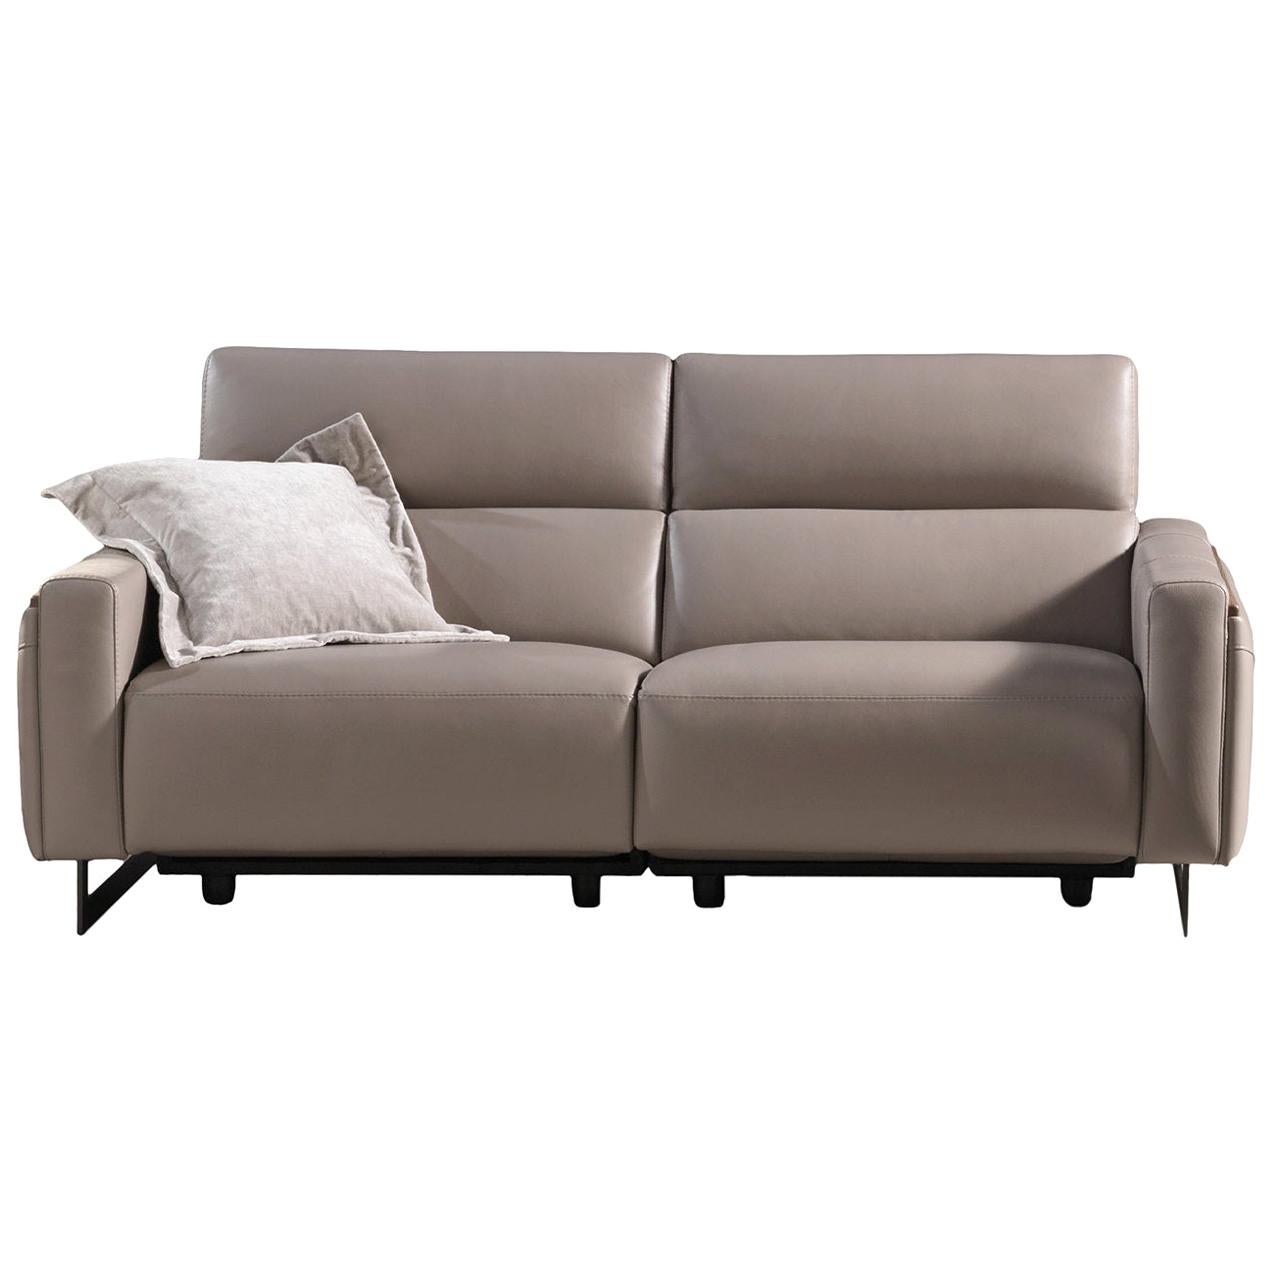 Nazaro Beige Leather 2-Seater Sofa